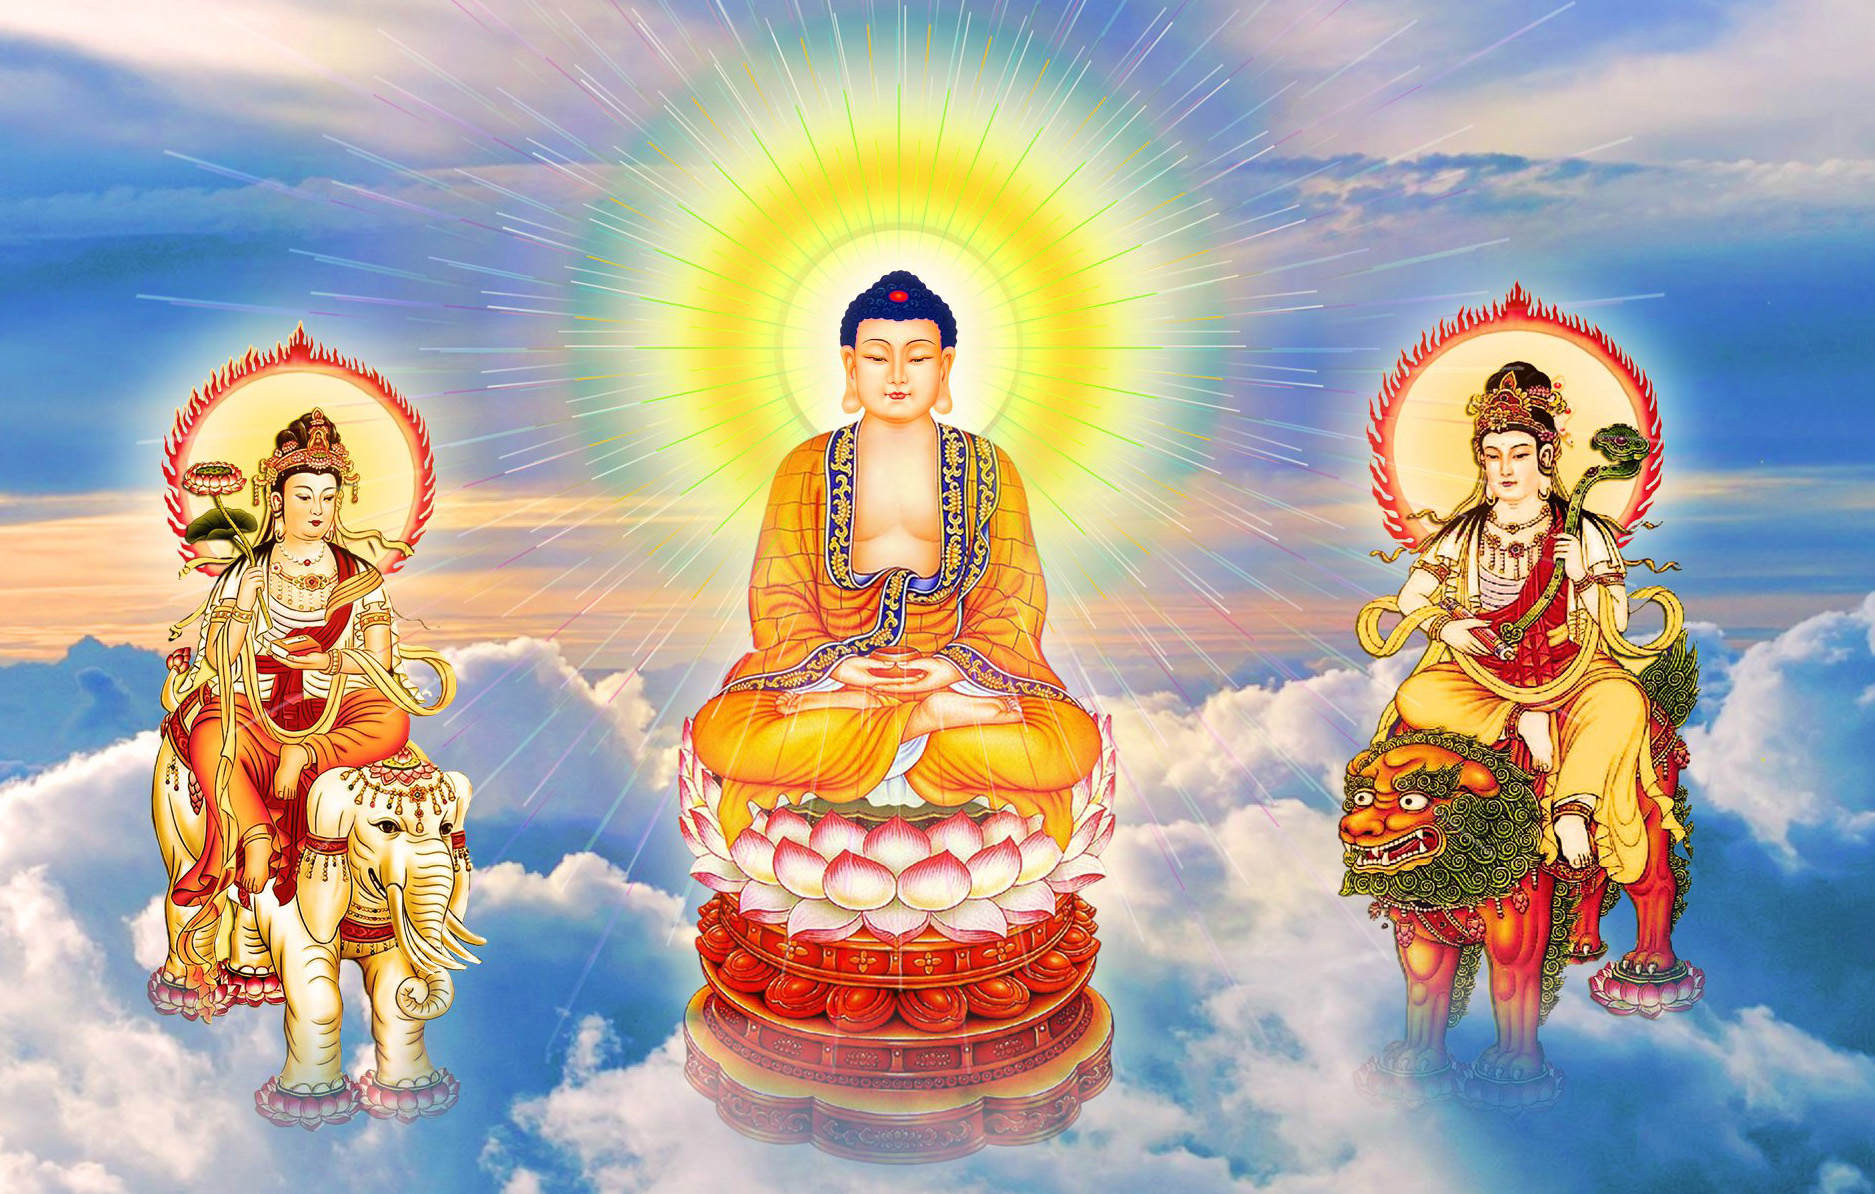 Tải Ngay 50 Hình Ảnh Phật Thích Ca Mâu Ni Đẹp Nhất Hiện Nay